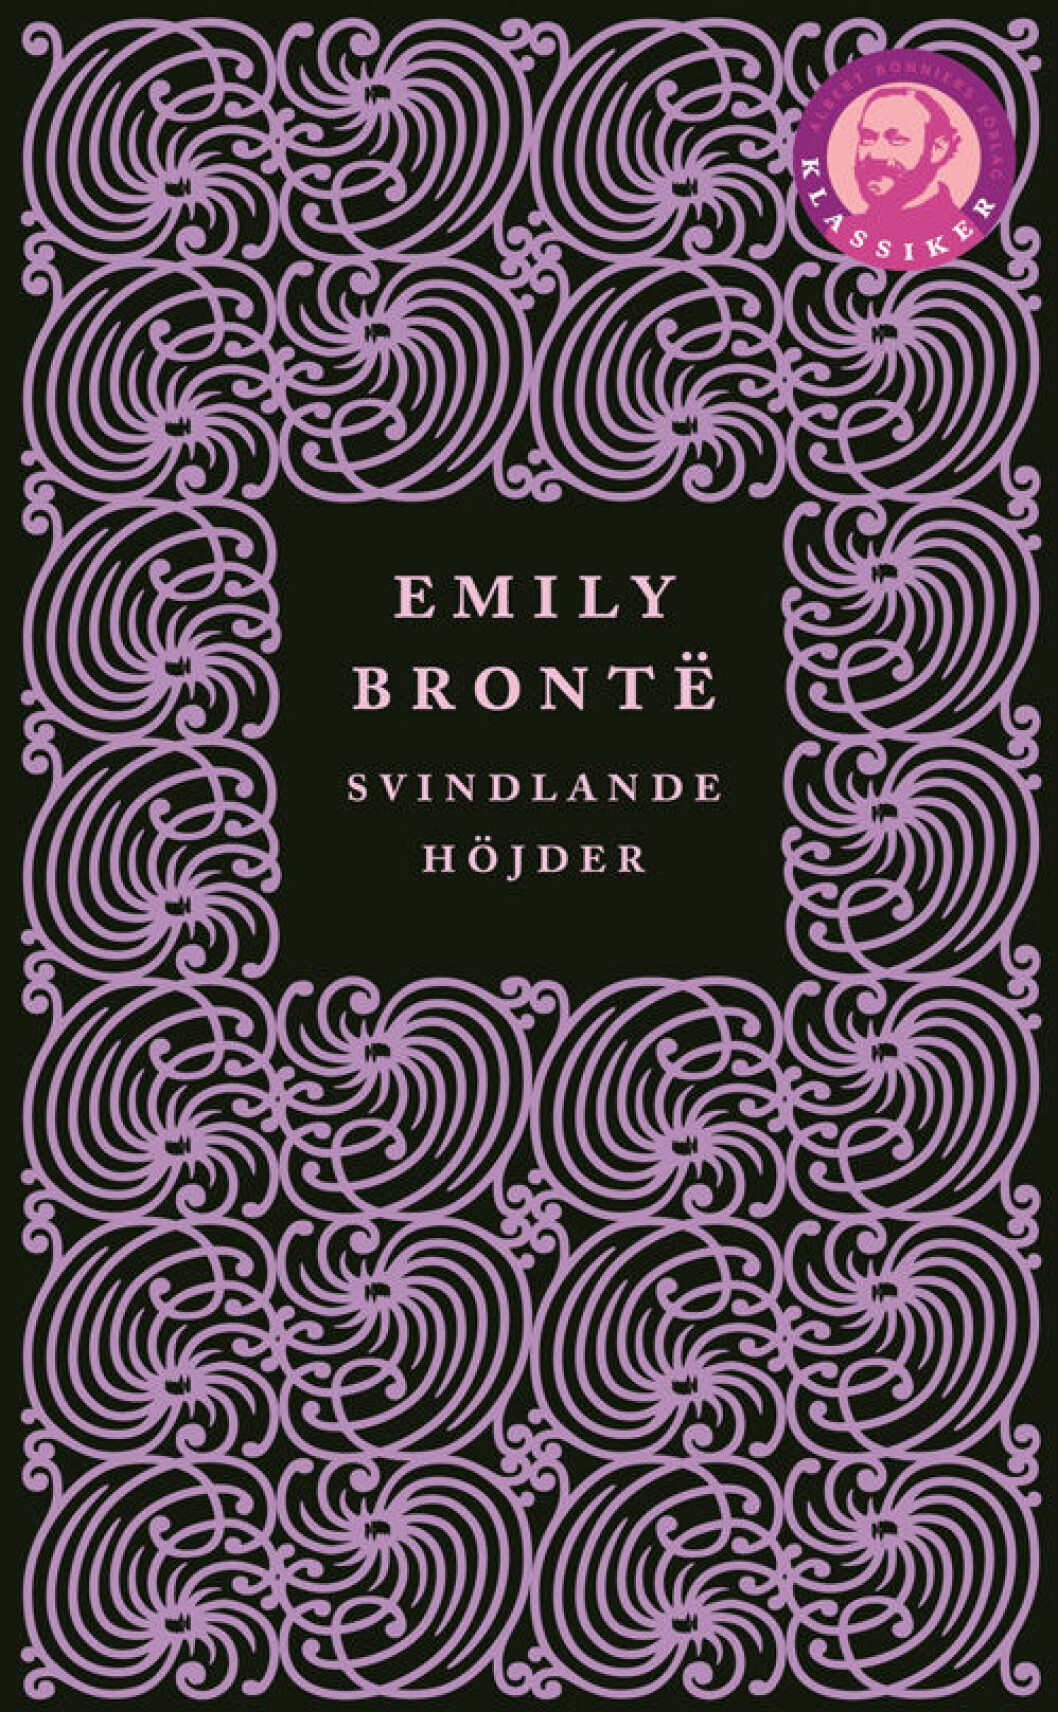 Emily Brontës Svindlande höjder.